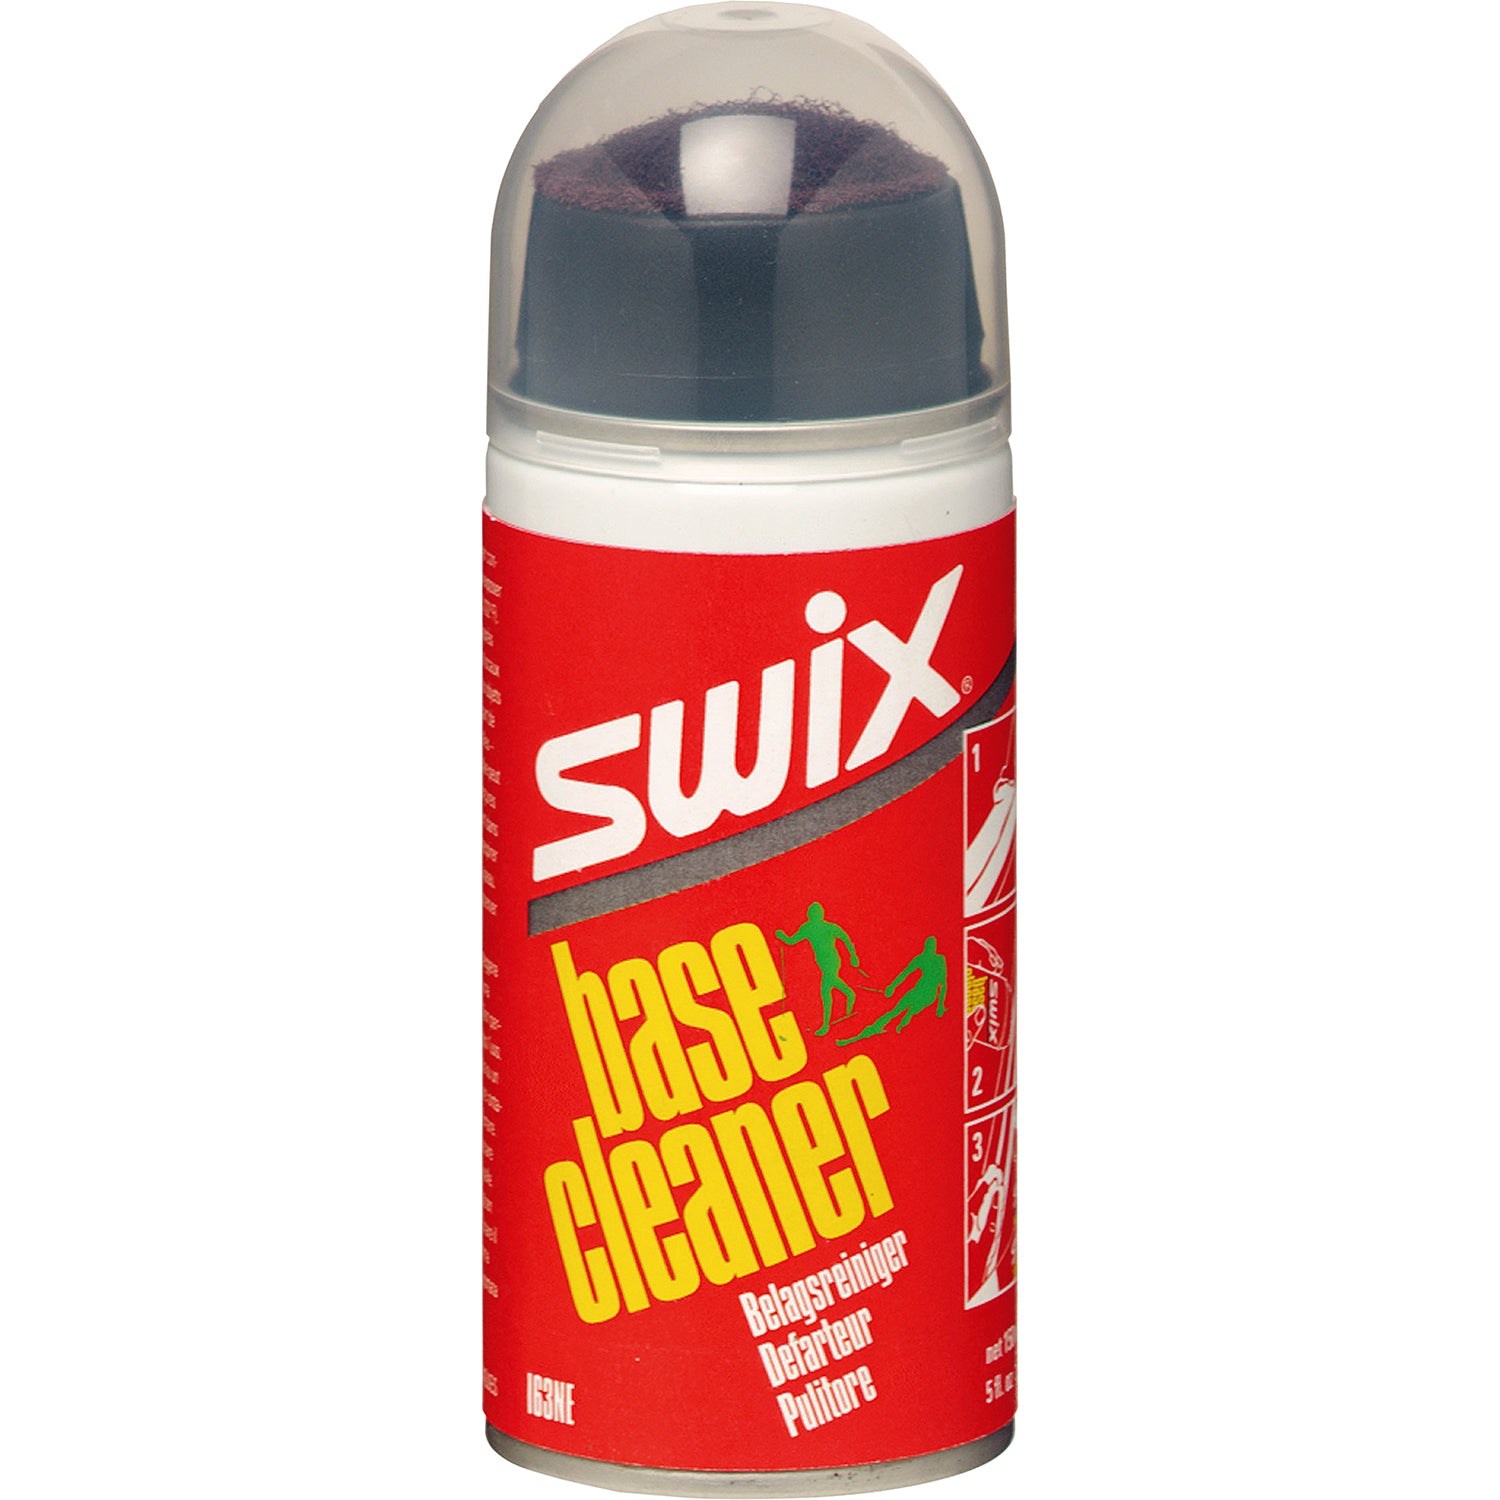 Swix Base Cleaner with Scrub 150ml